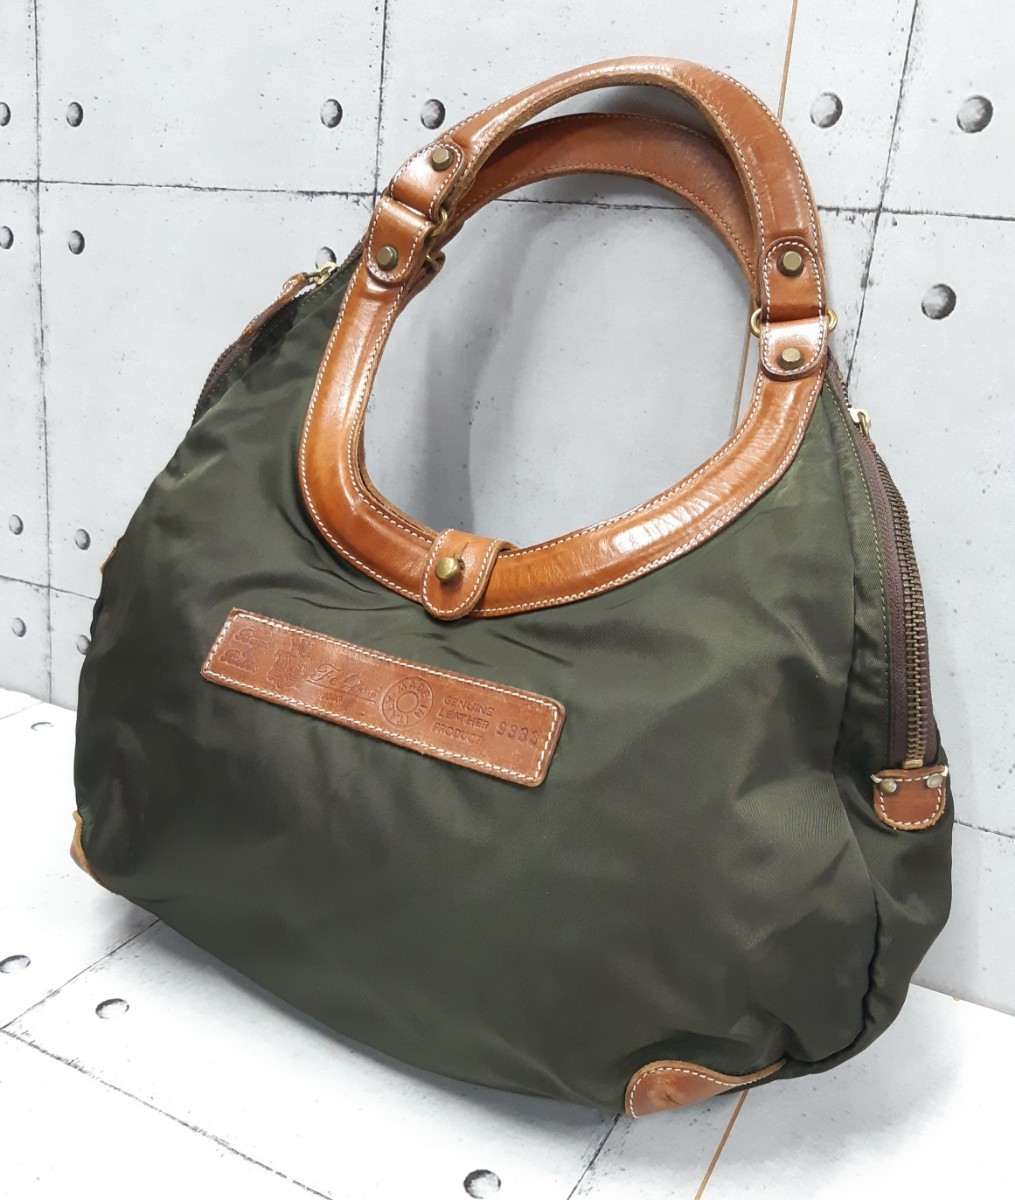 SALE! распродажа!Felisi 9333 Circle сумка ручная сумочка сумка на плечо Felisi кожа комбинированный 